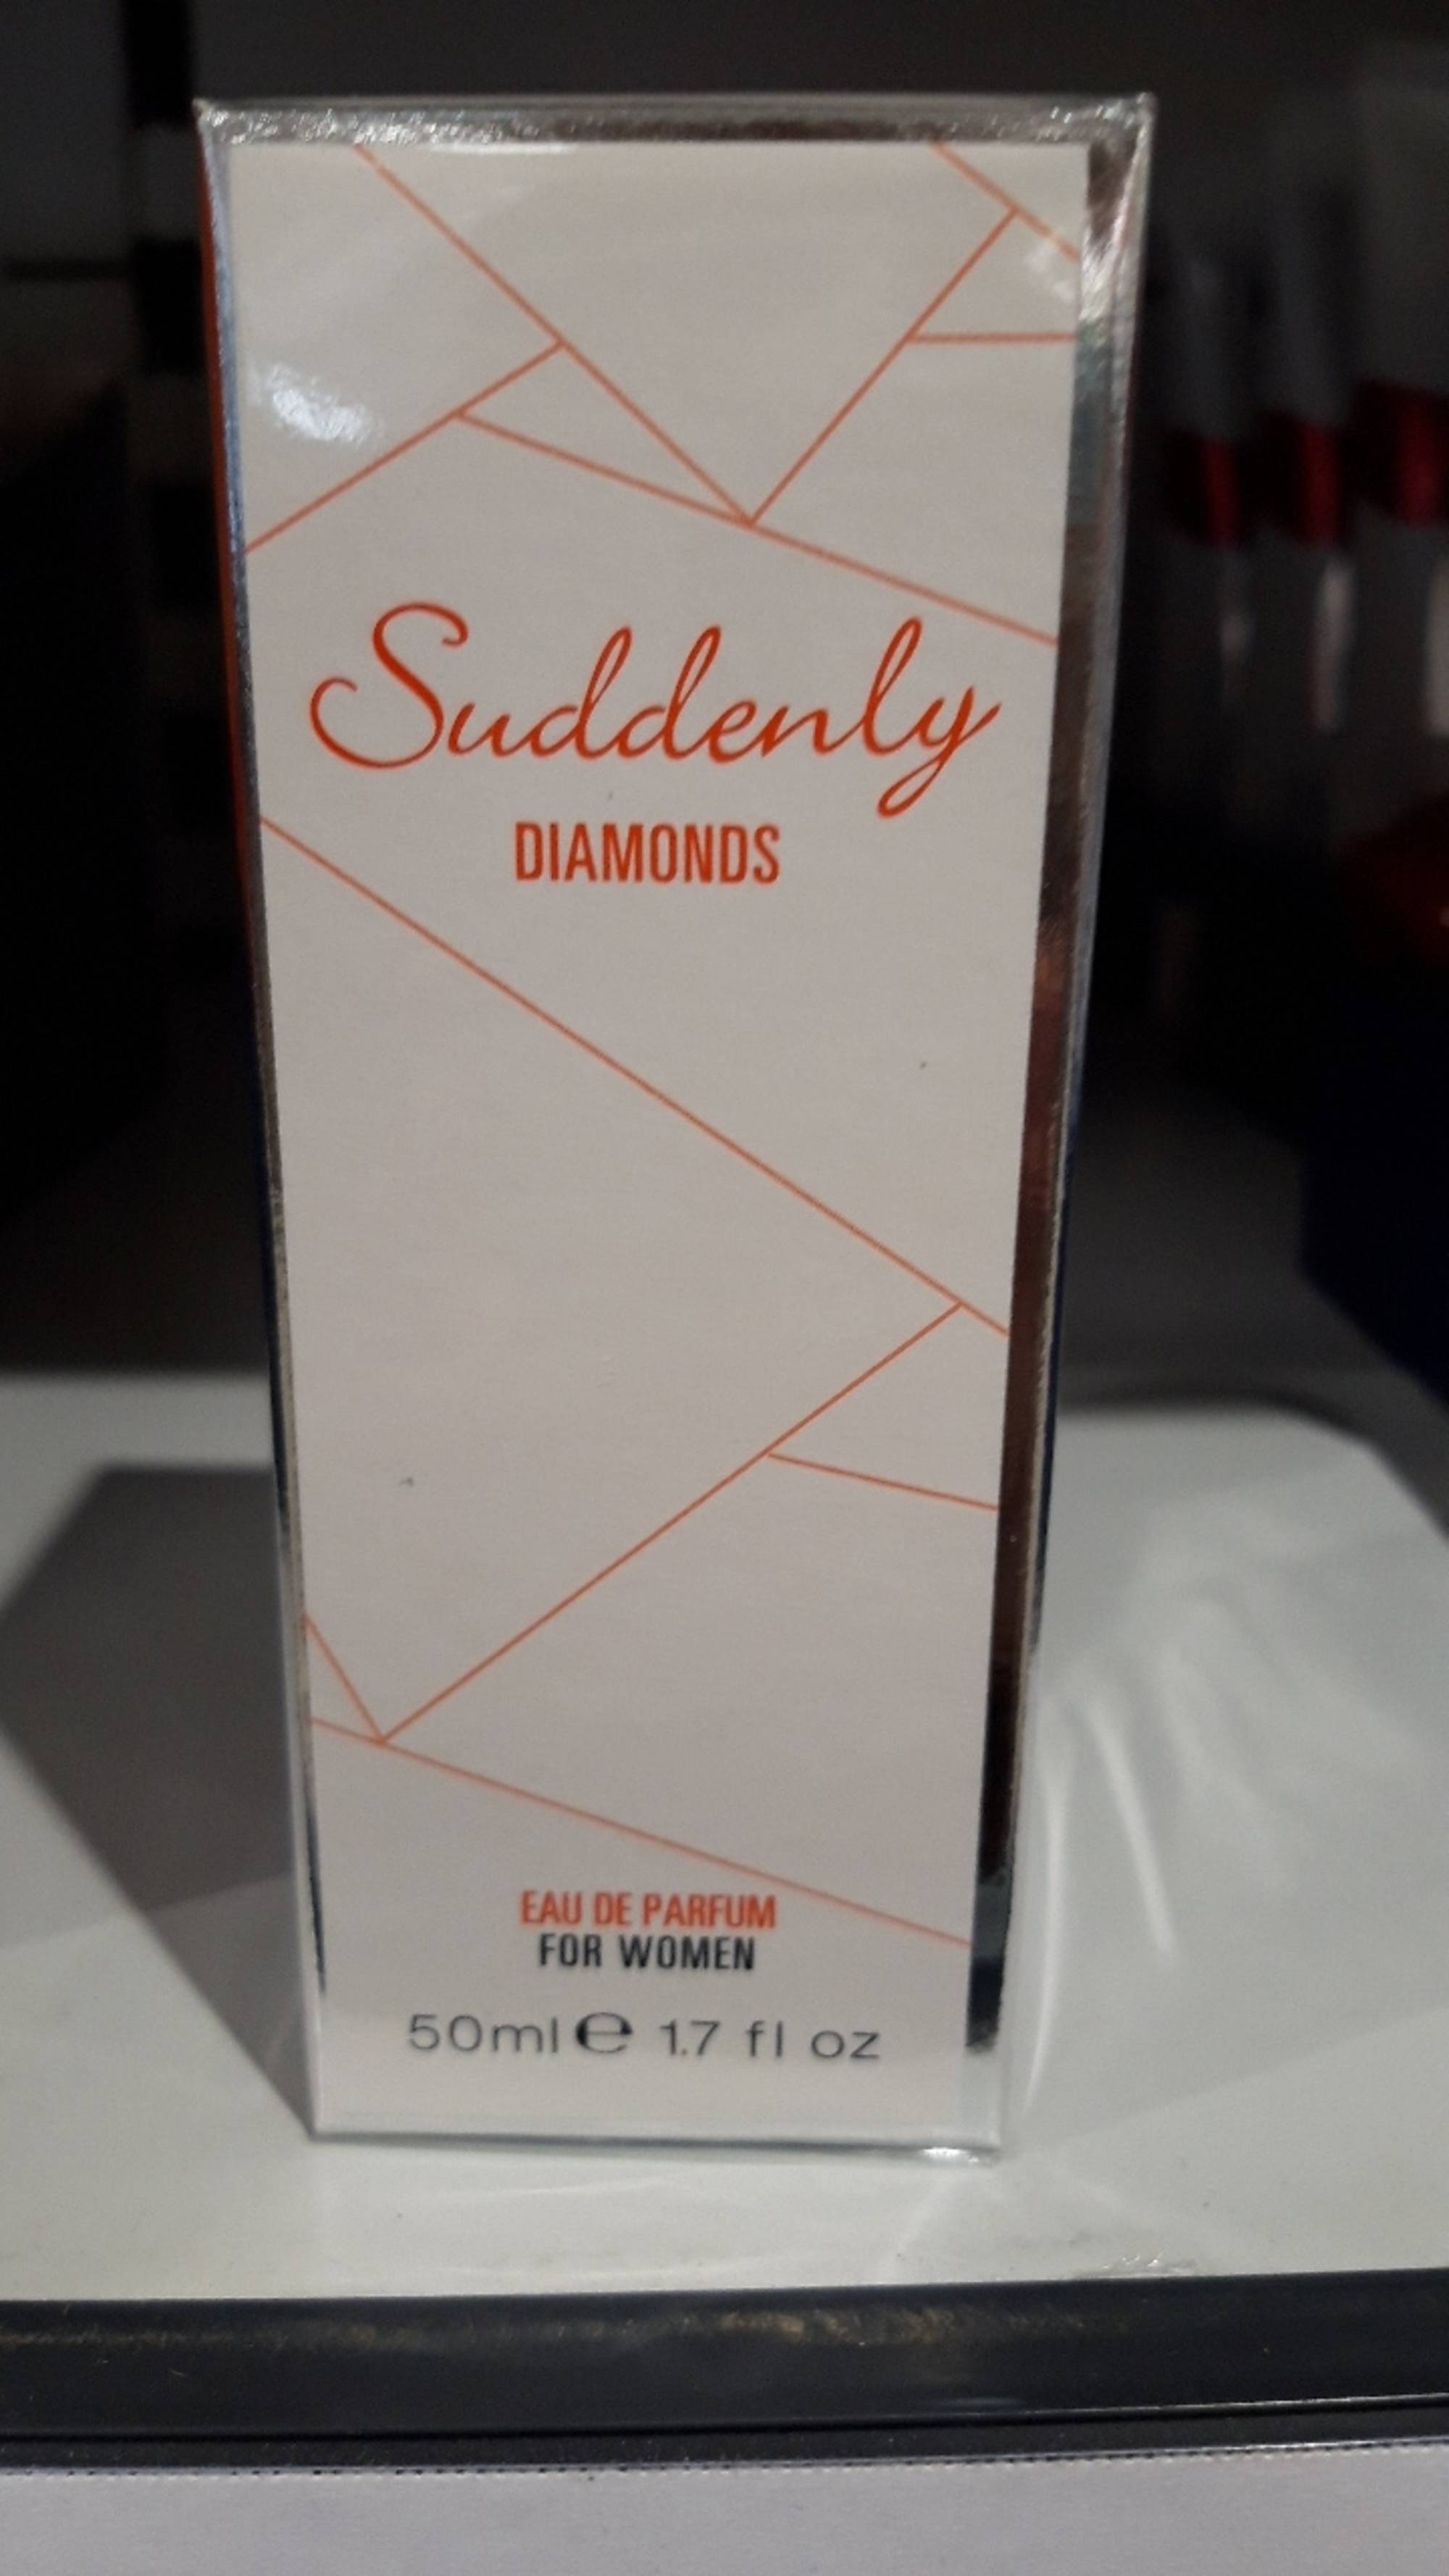 LIDL - Suddenly Diamonds - Eau de parfum for women